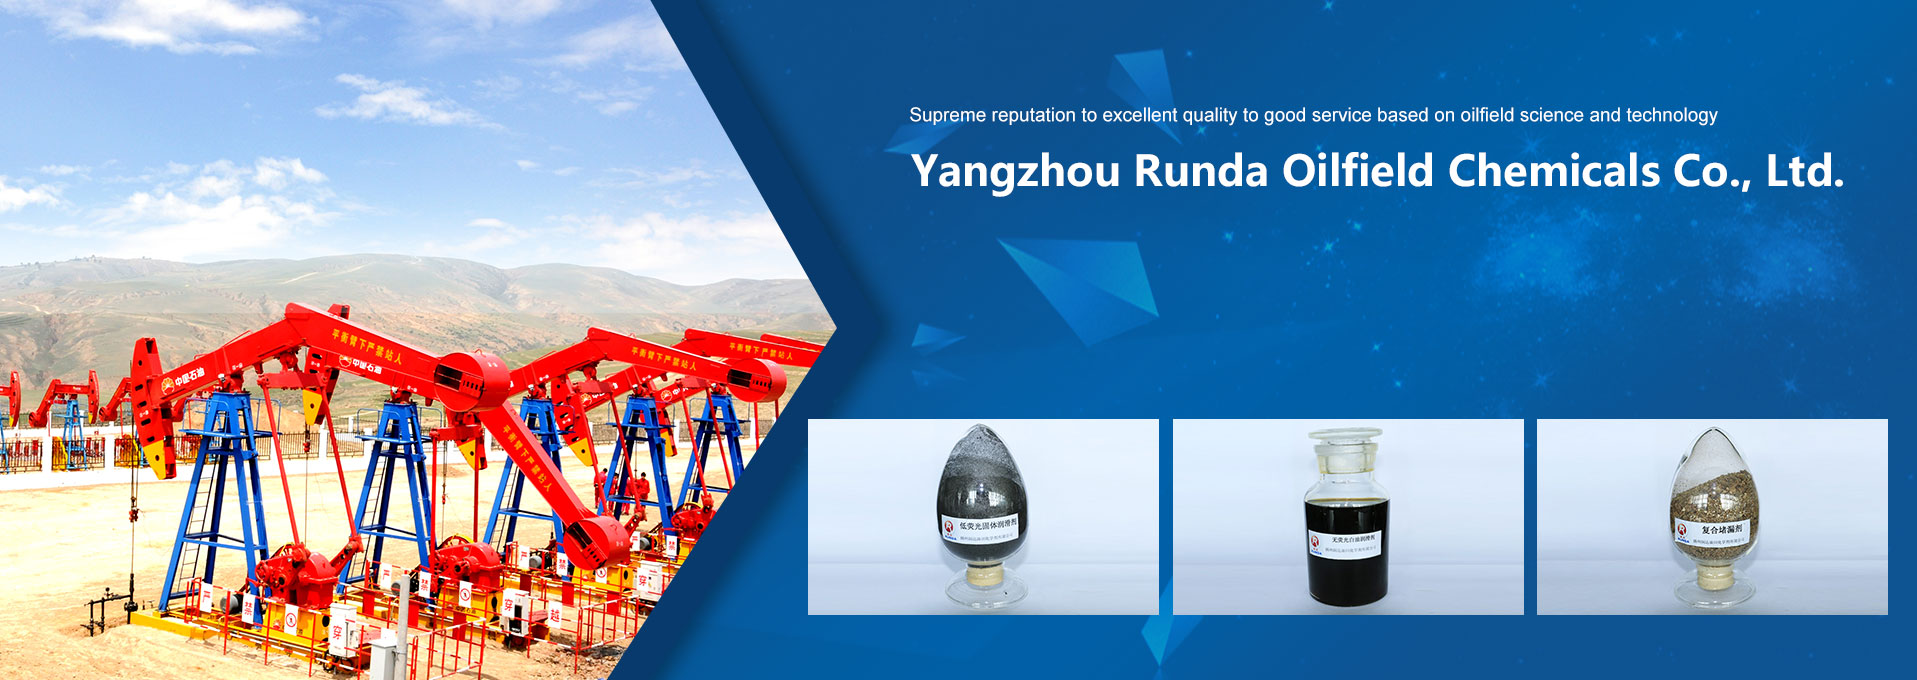 Yangzhou Runda Oilfield Chemicals Co., Ltd.